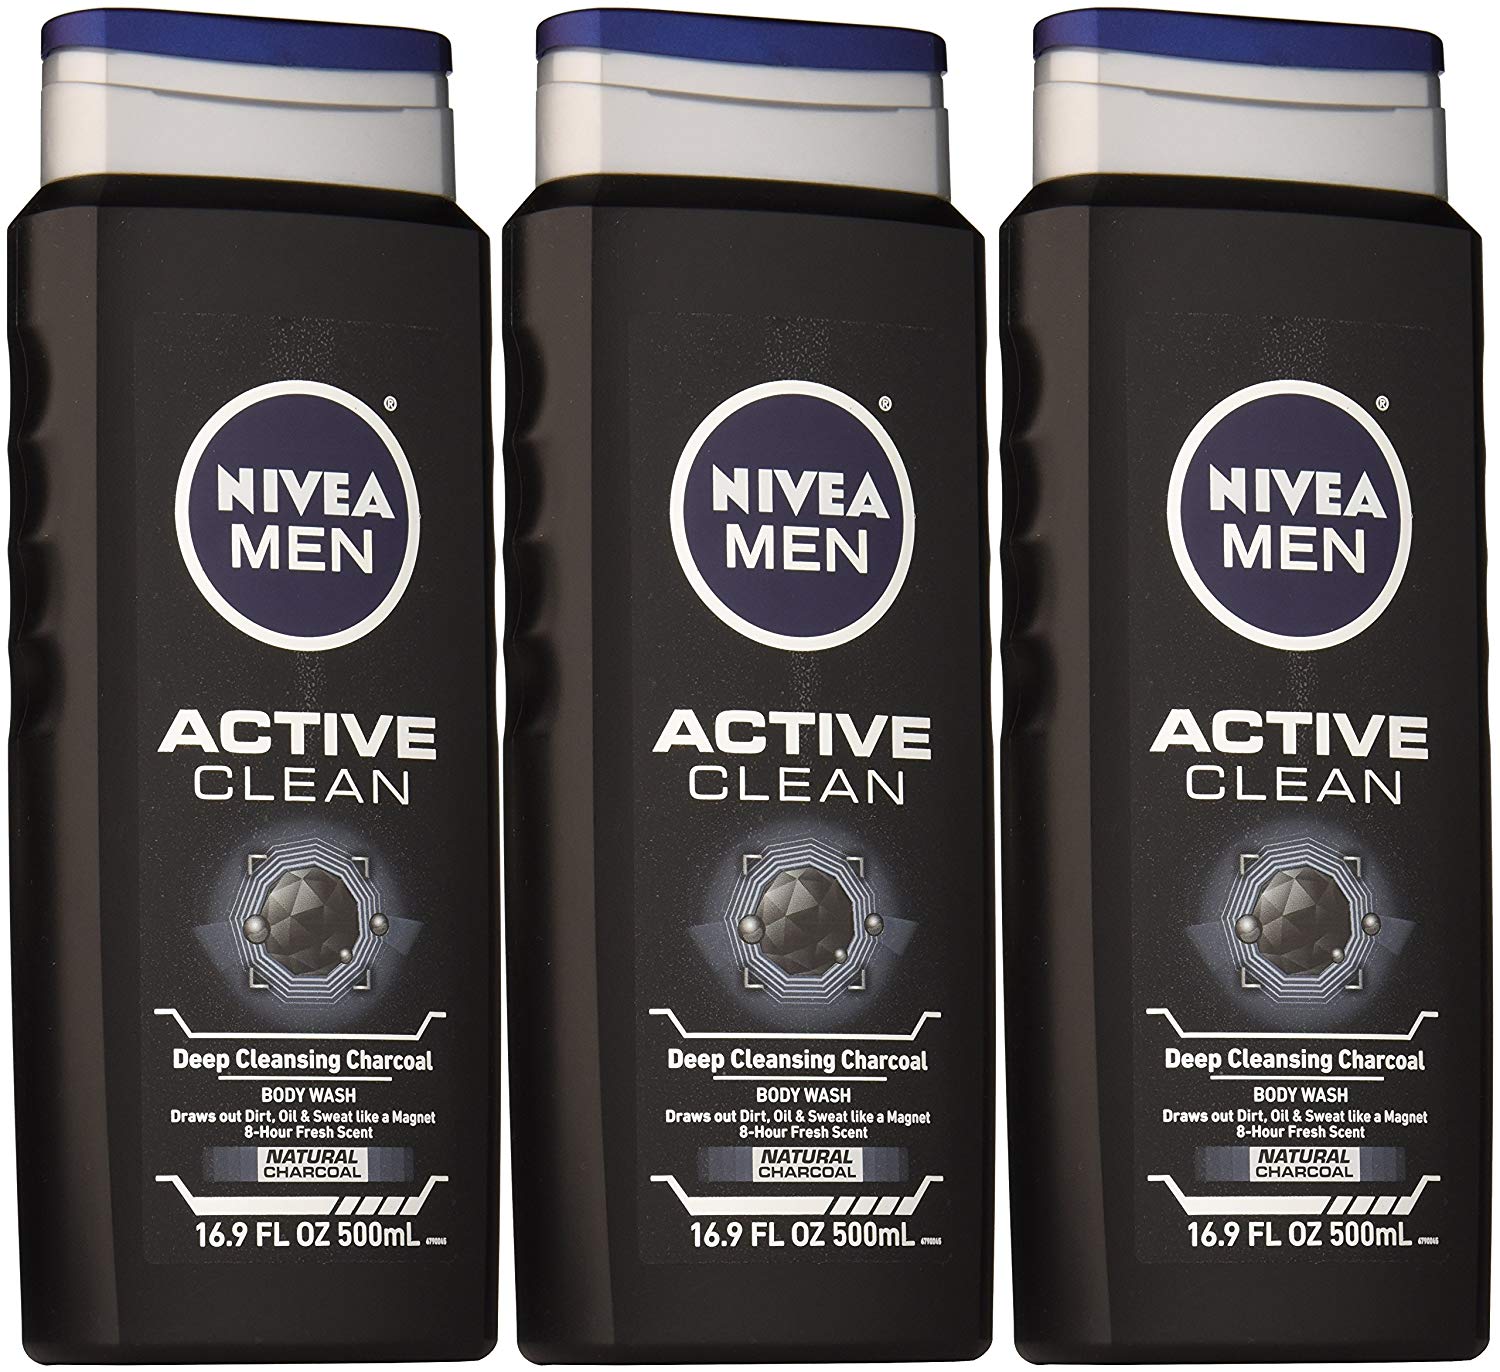 Мыло шампунь мужской. Nivea men 50 ml Stick. Nivea men Active crean. Active clean Nivea men 50ml. Nivea Active clean шампунь.